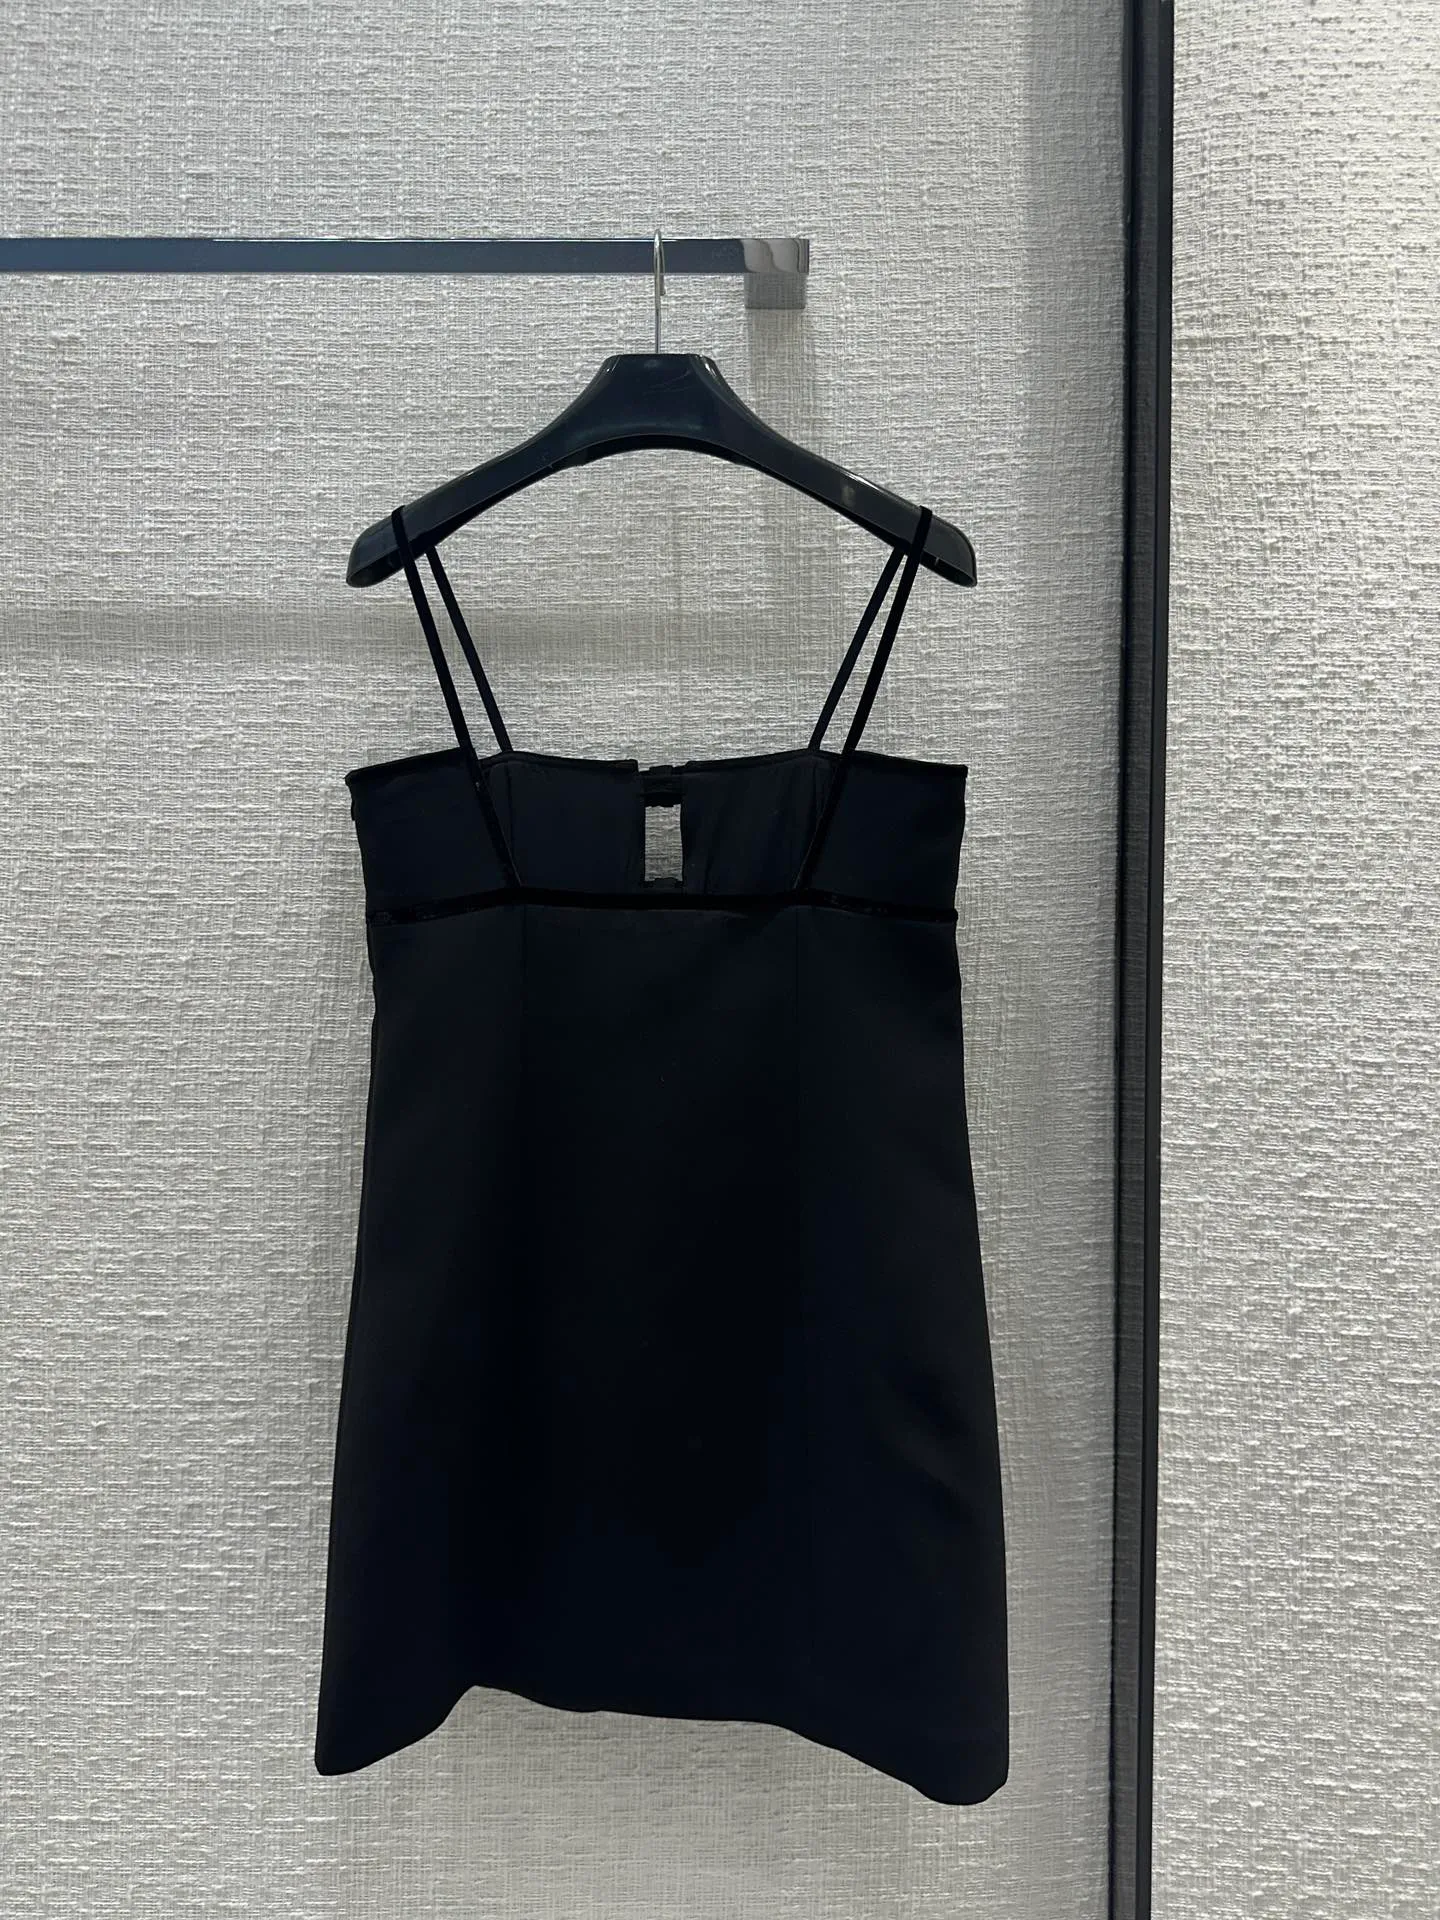 Designerska sukienka z zawieszeniem, bez ramiączki małą czarną sukienkę, patchwork aksamitne łuki, 24 wczesną wiosną Nowy temperament wydrążony